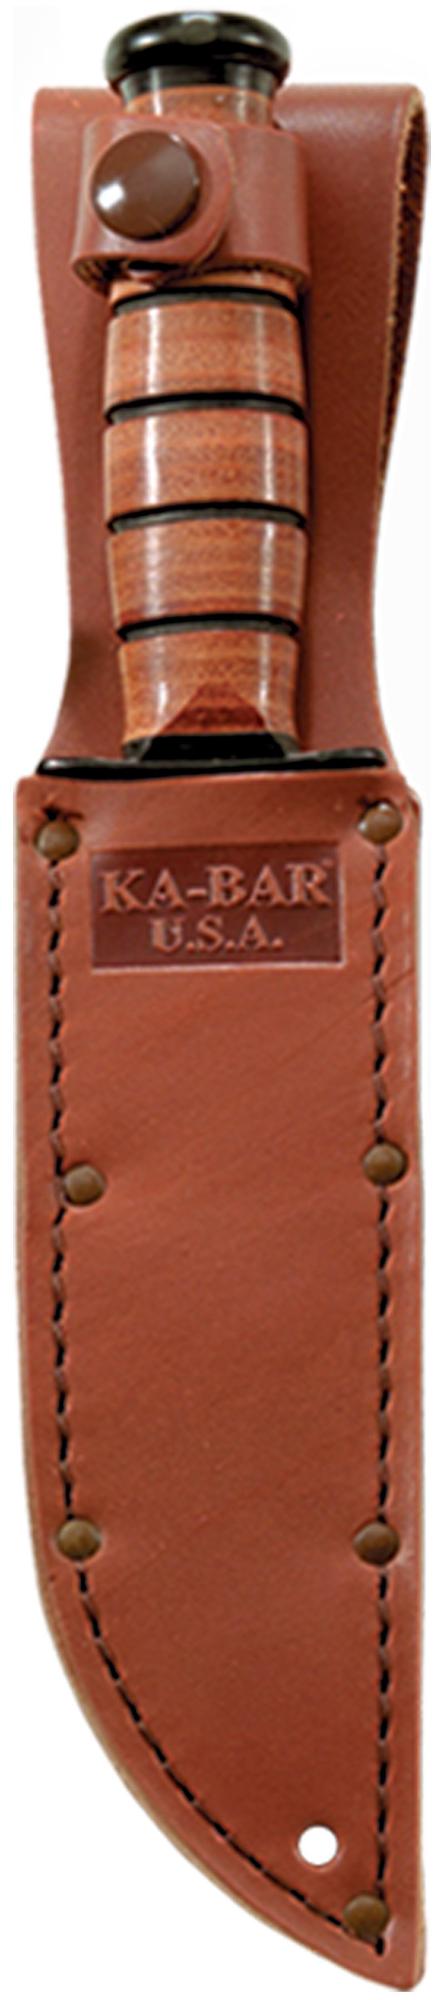 Ka-Bar Short USA 1251 Fixed Blade Knife